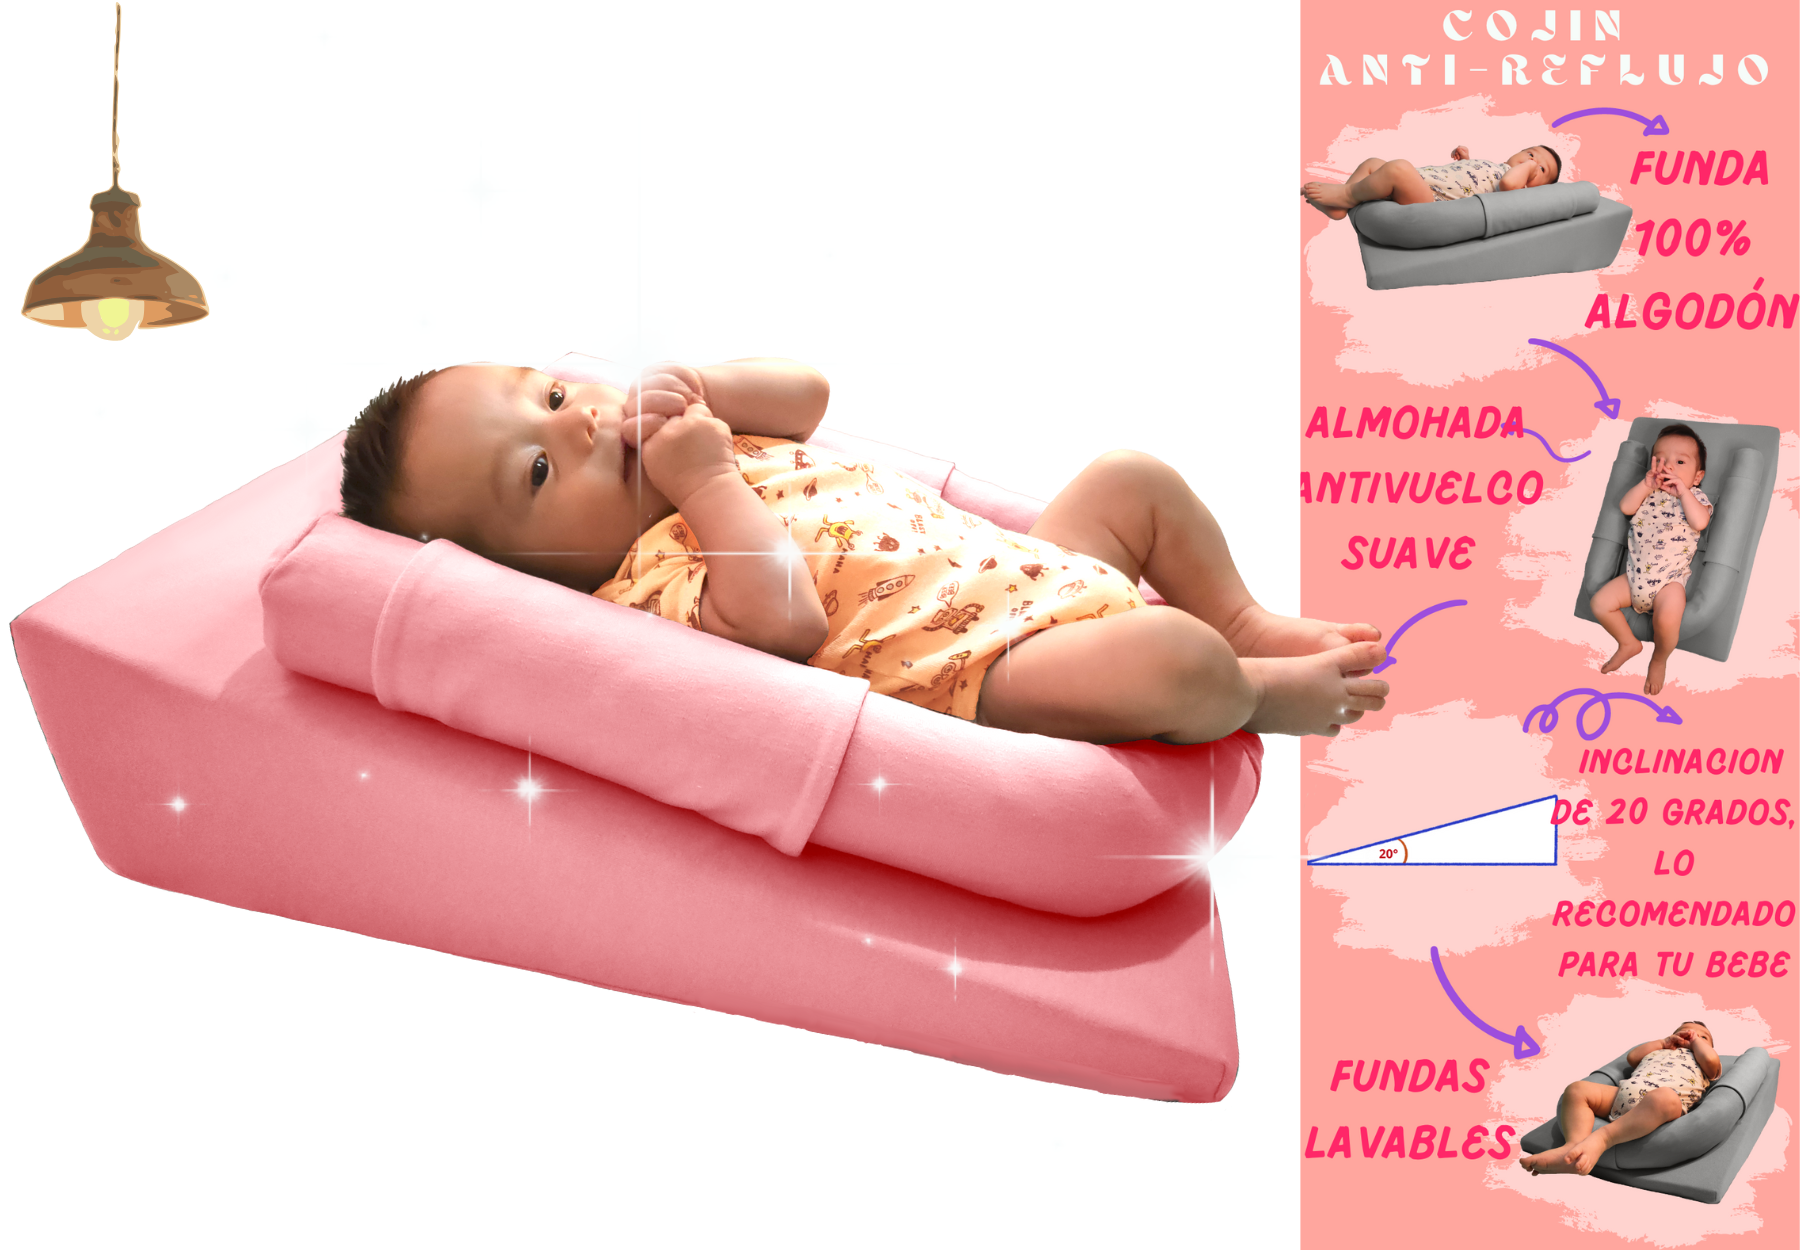 Cojin especial para controlar el reflujo en el bebe